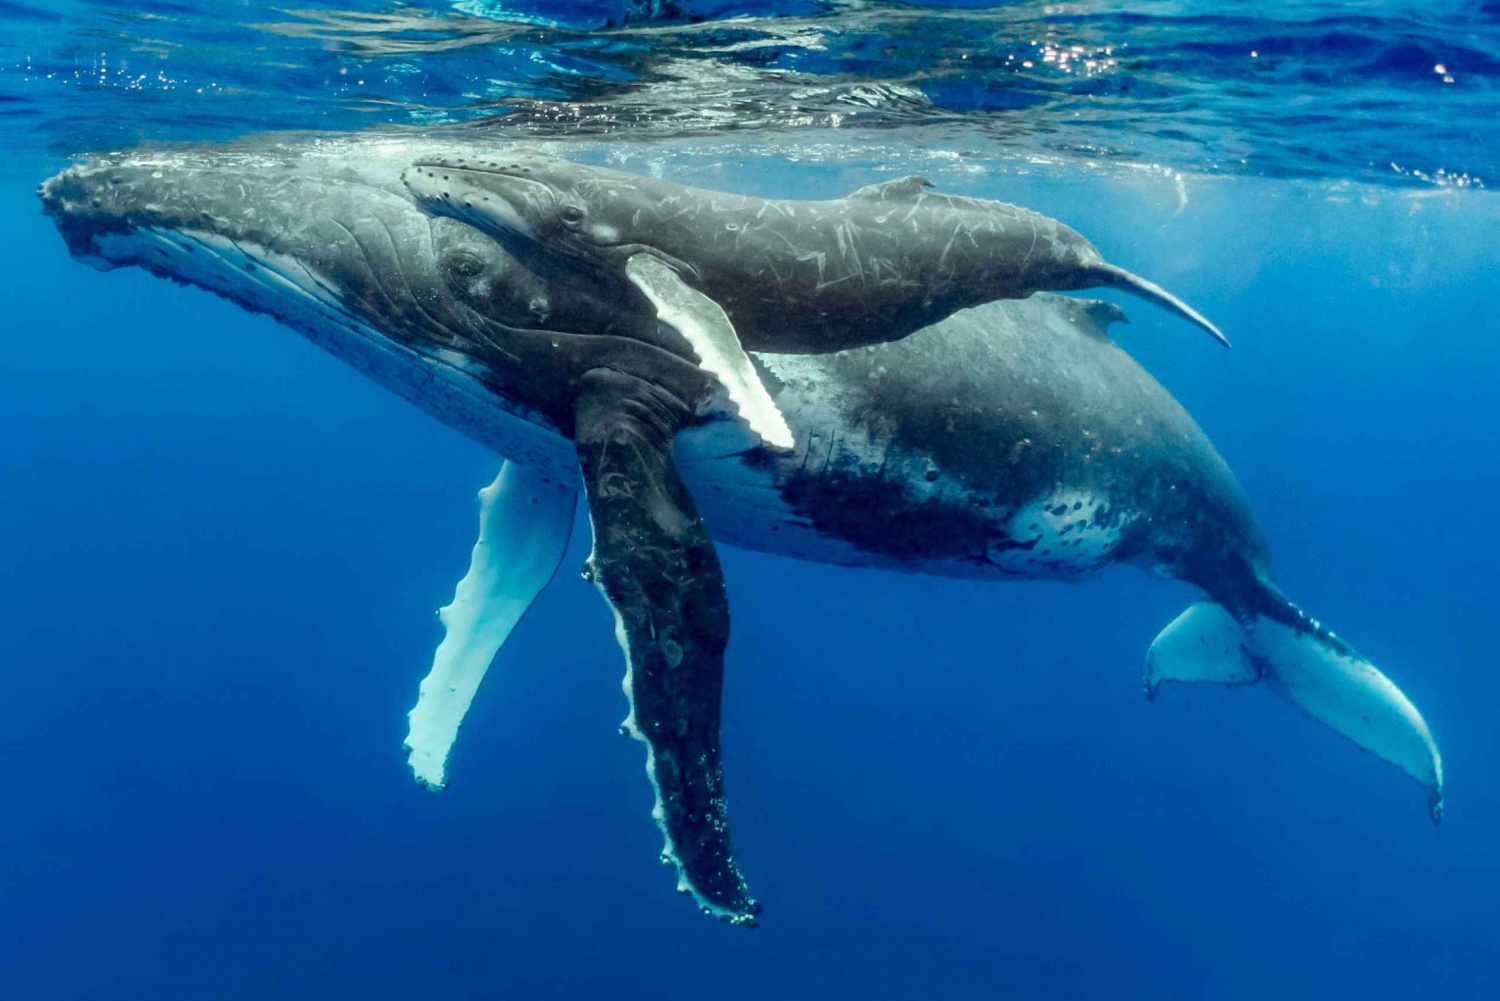 Uvita: Parque Nacional Marino Ballena Observação de baleias e golfinhos